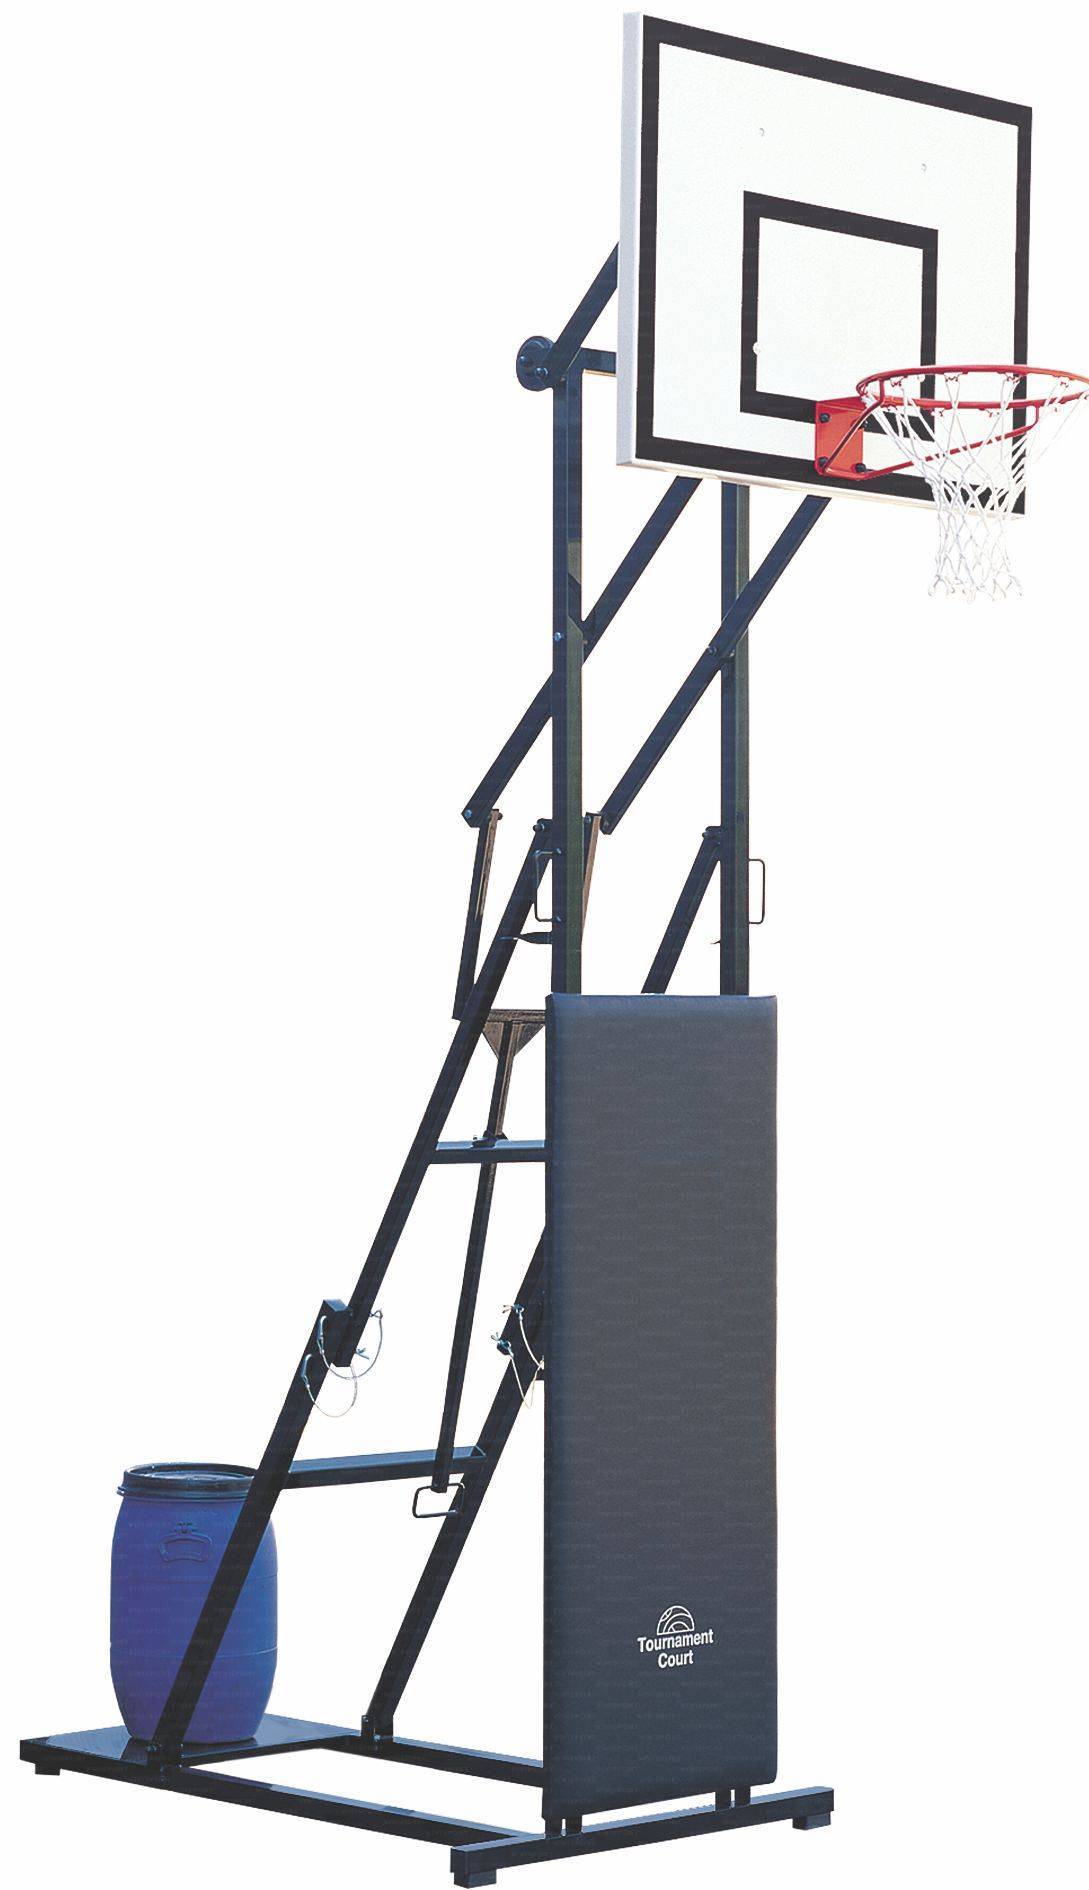 Mezzo impianto basket/minibasket mod. Streetball, pieghevole, altezza canestro regolabile da 210 a 305 cm., tabellone rettangolare 110x90 cm., zavorra non inclusa